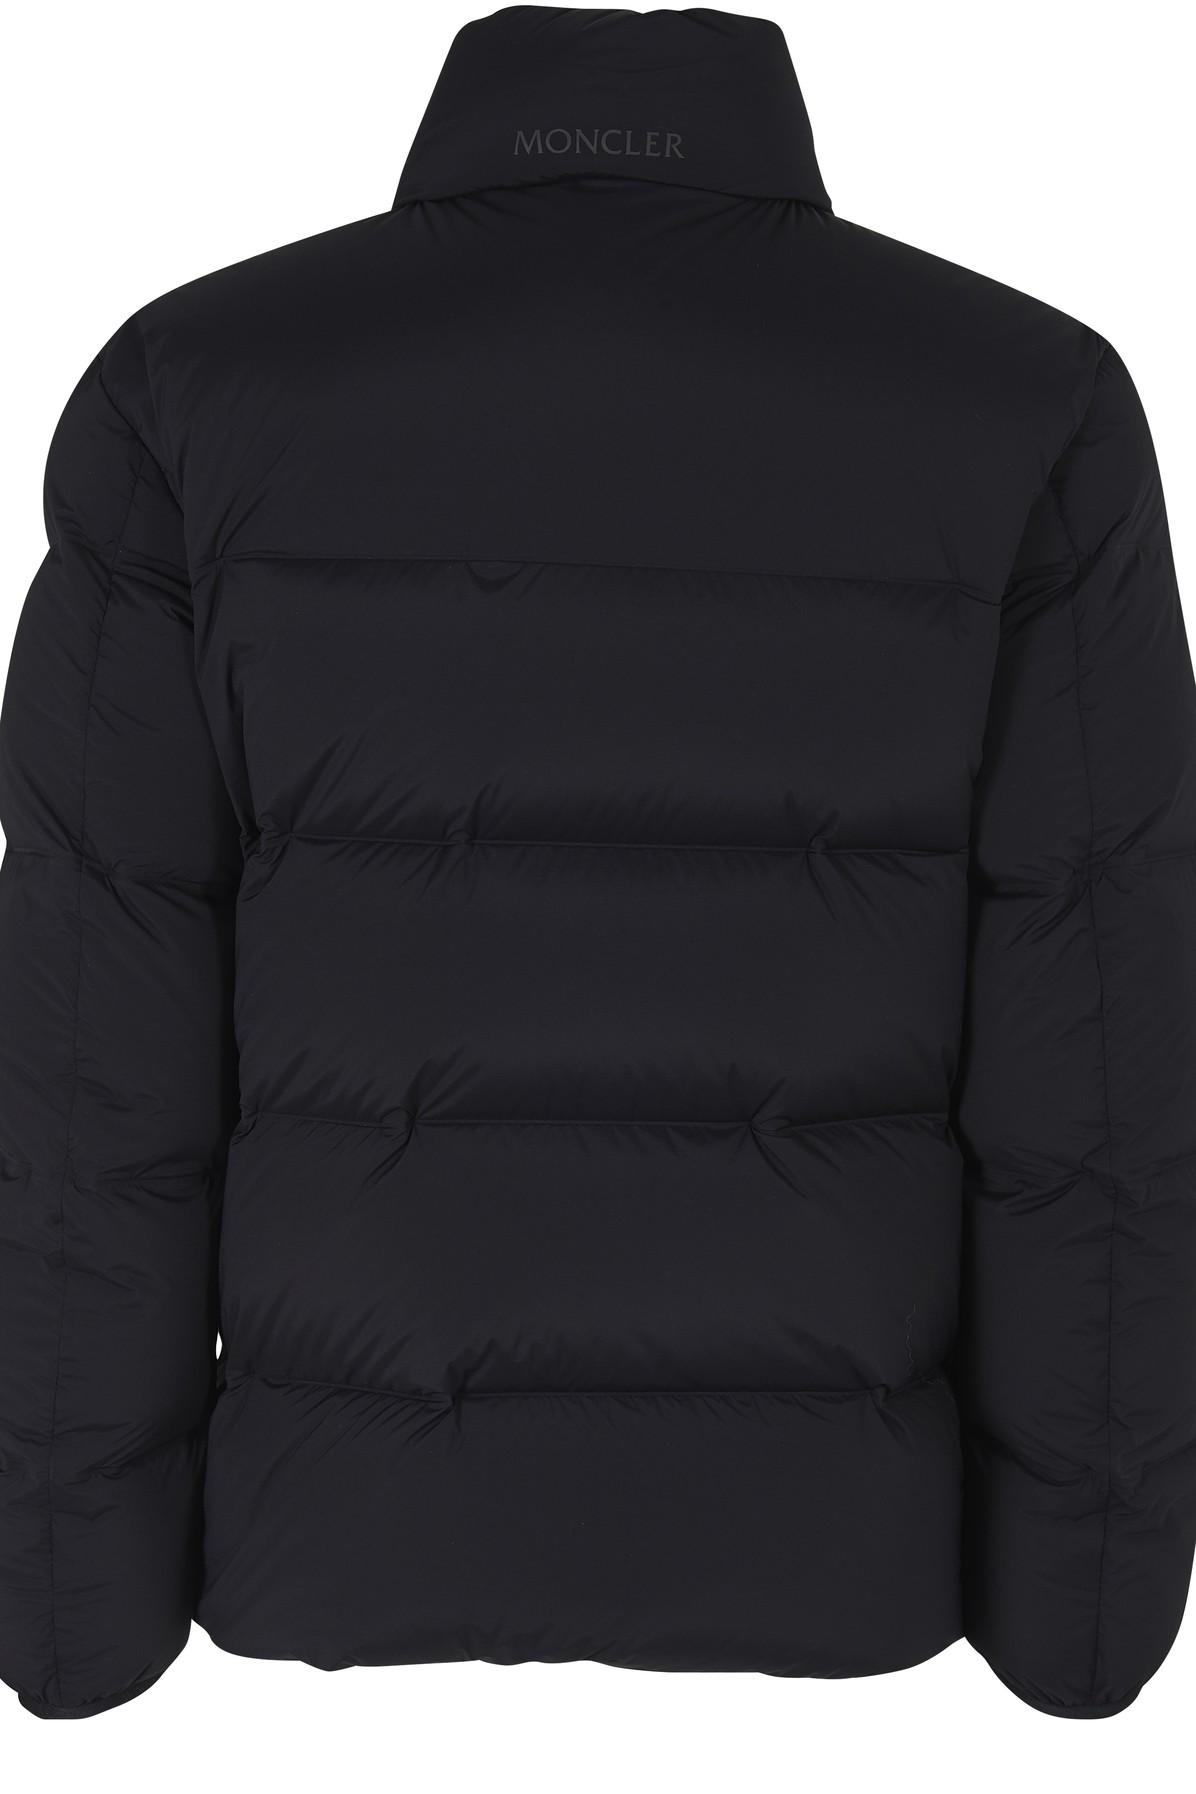 Moncler Quiberville Down Jacket in Black for Men - Lyst